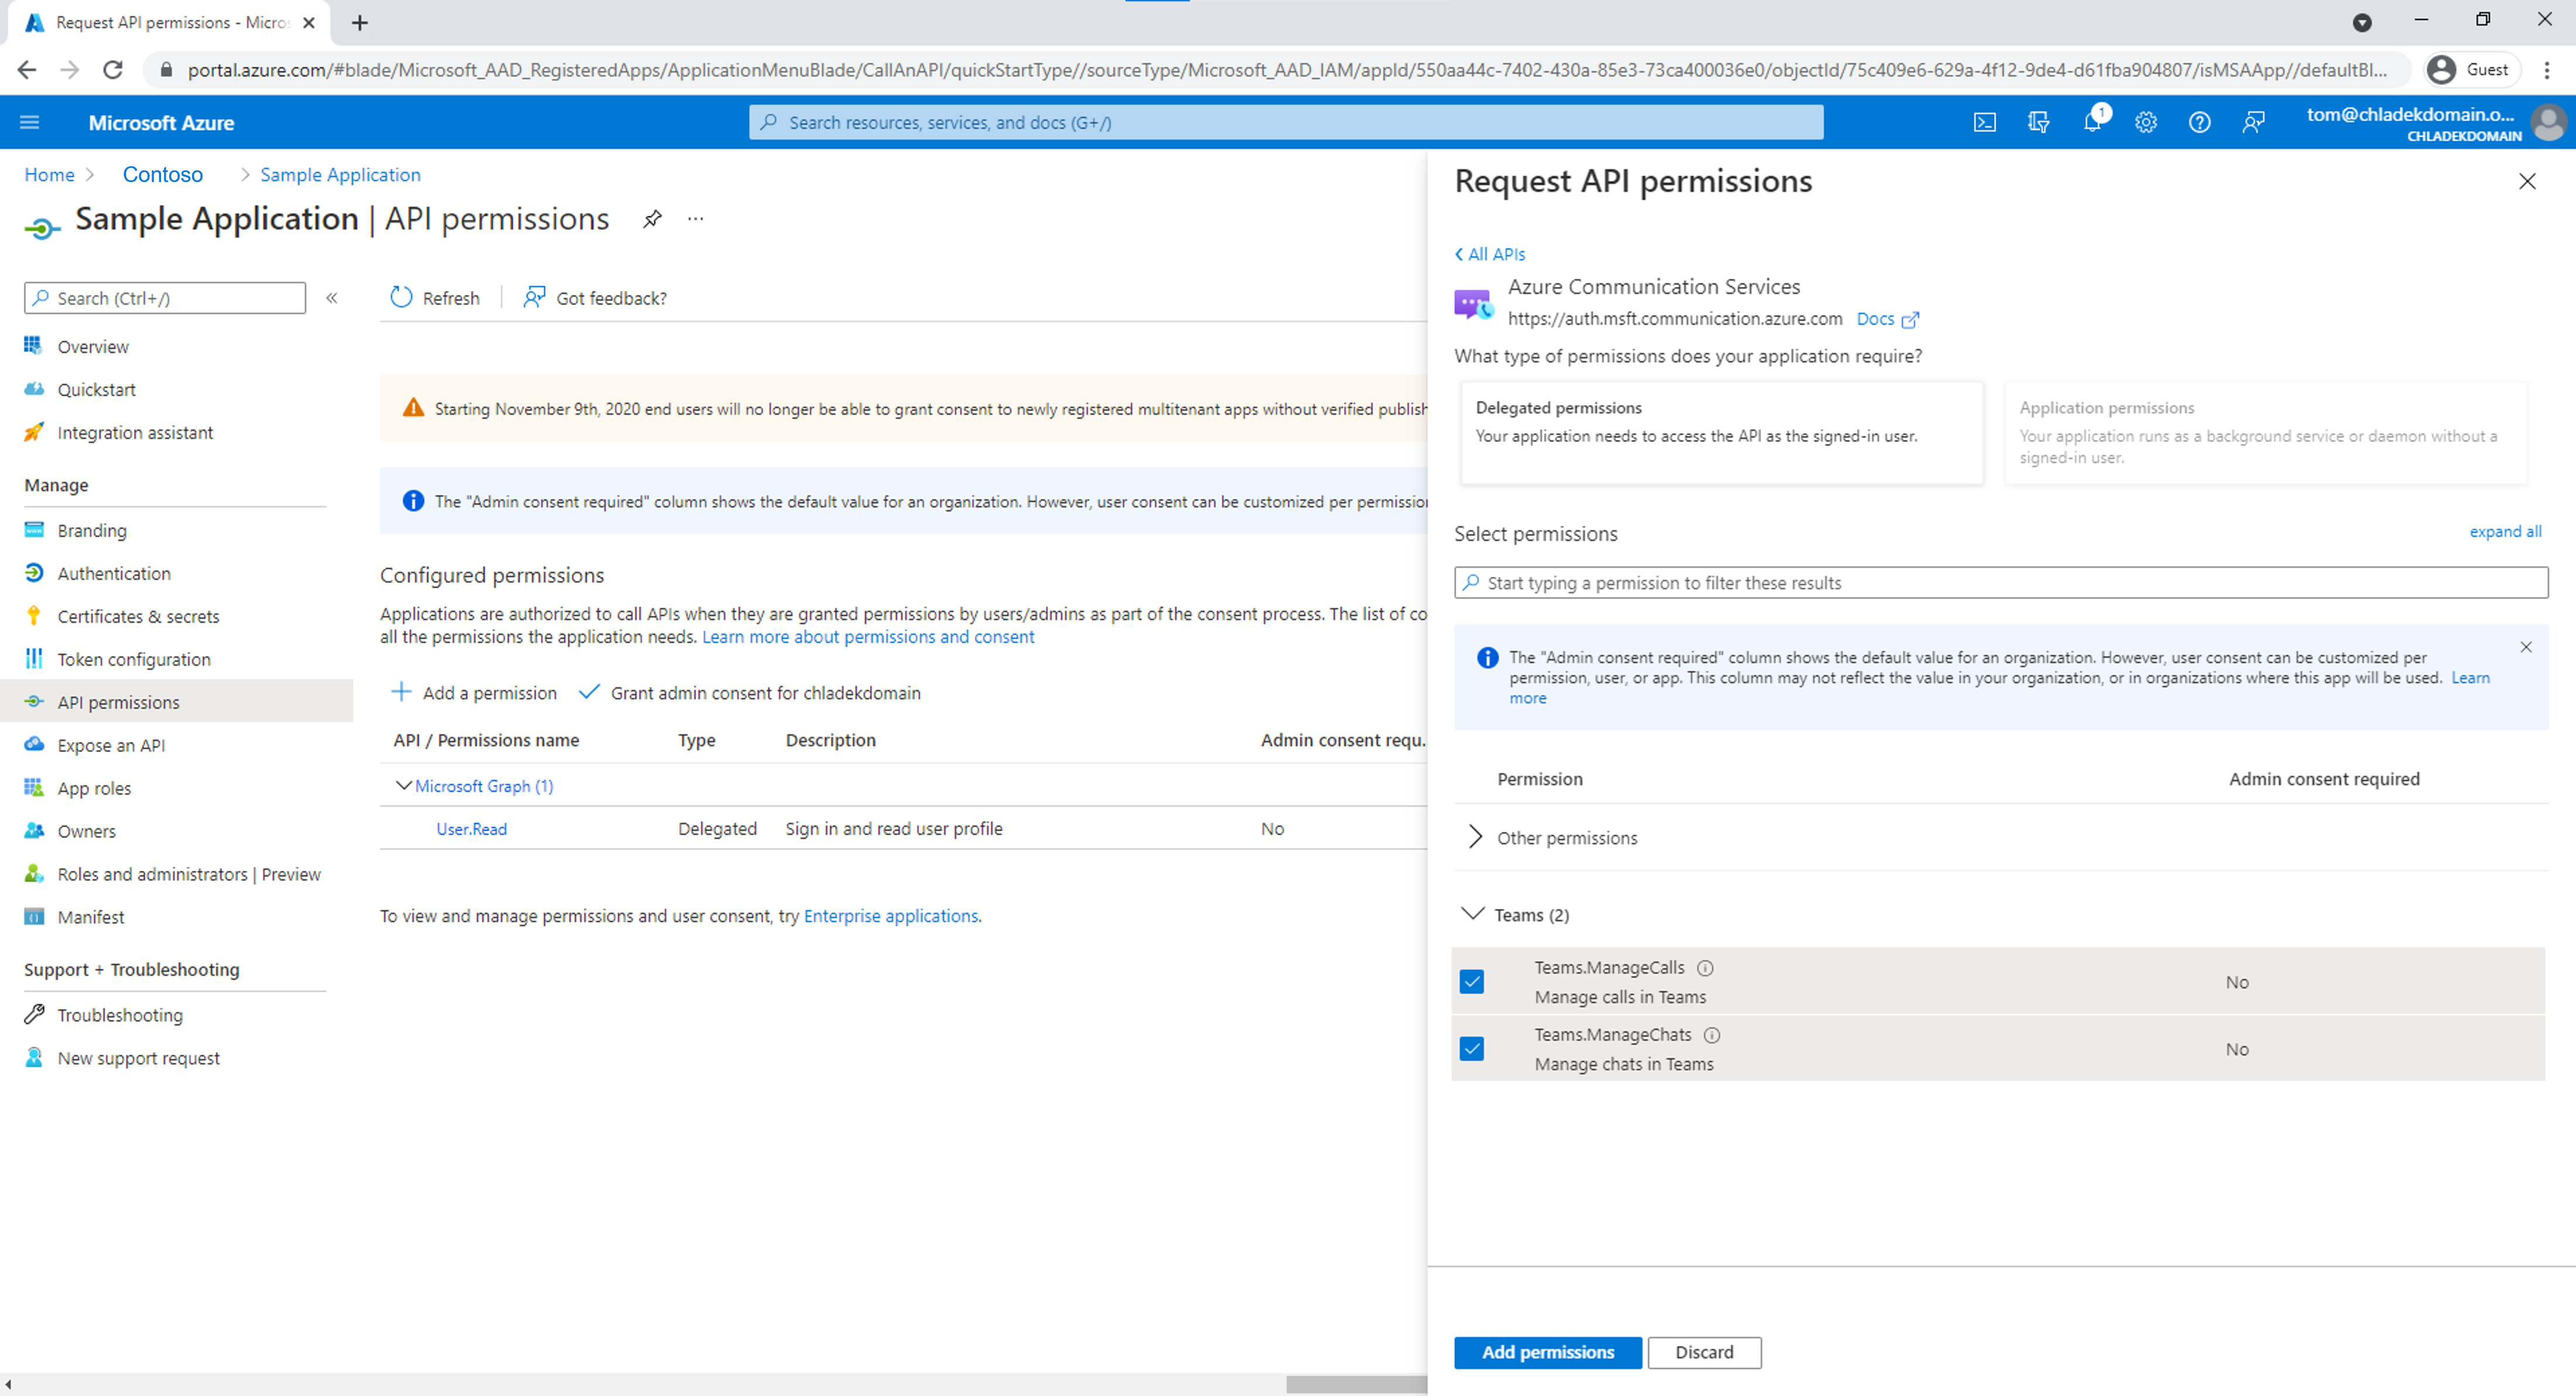 將 Teams.ManageCalls 和 Teams.ManageChats 許可權新增至上一個步驟中建立的 Microsoft Entra 應用程式。